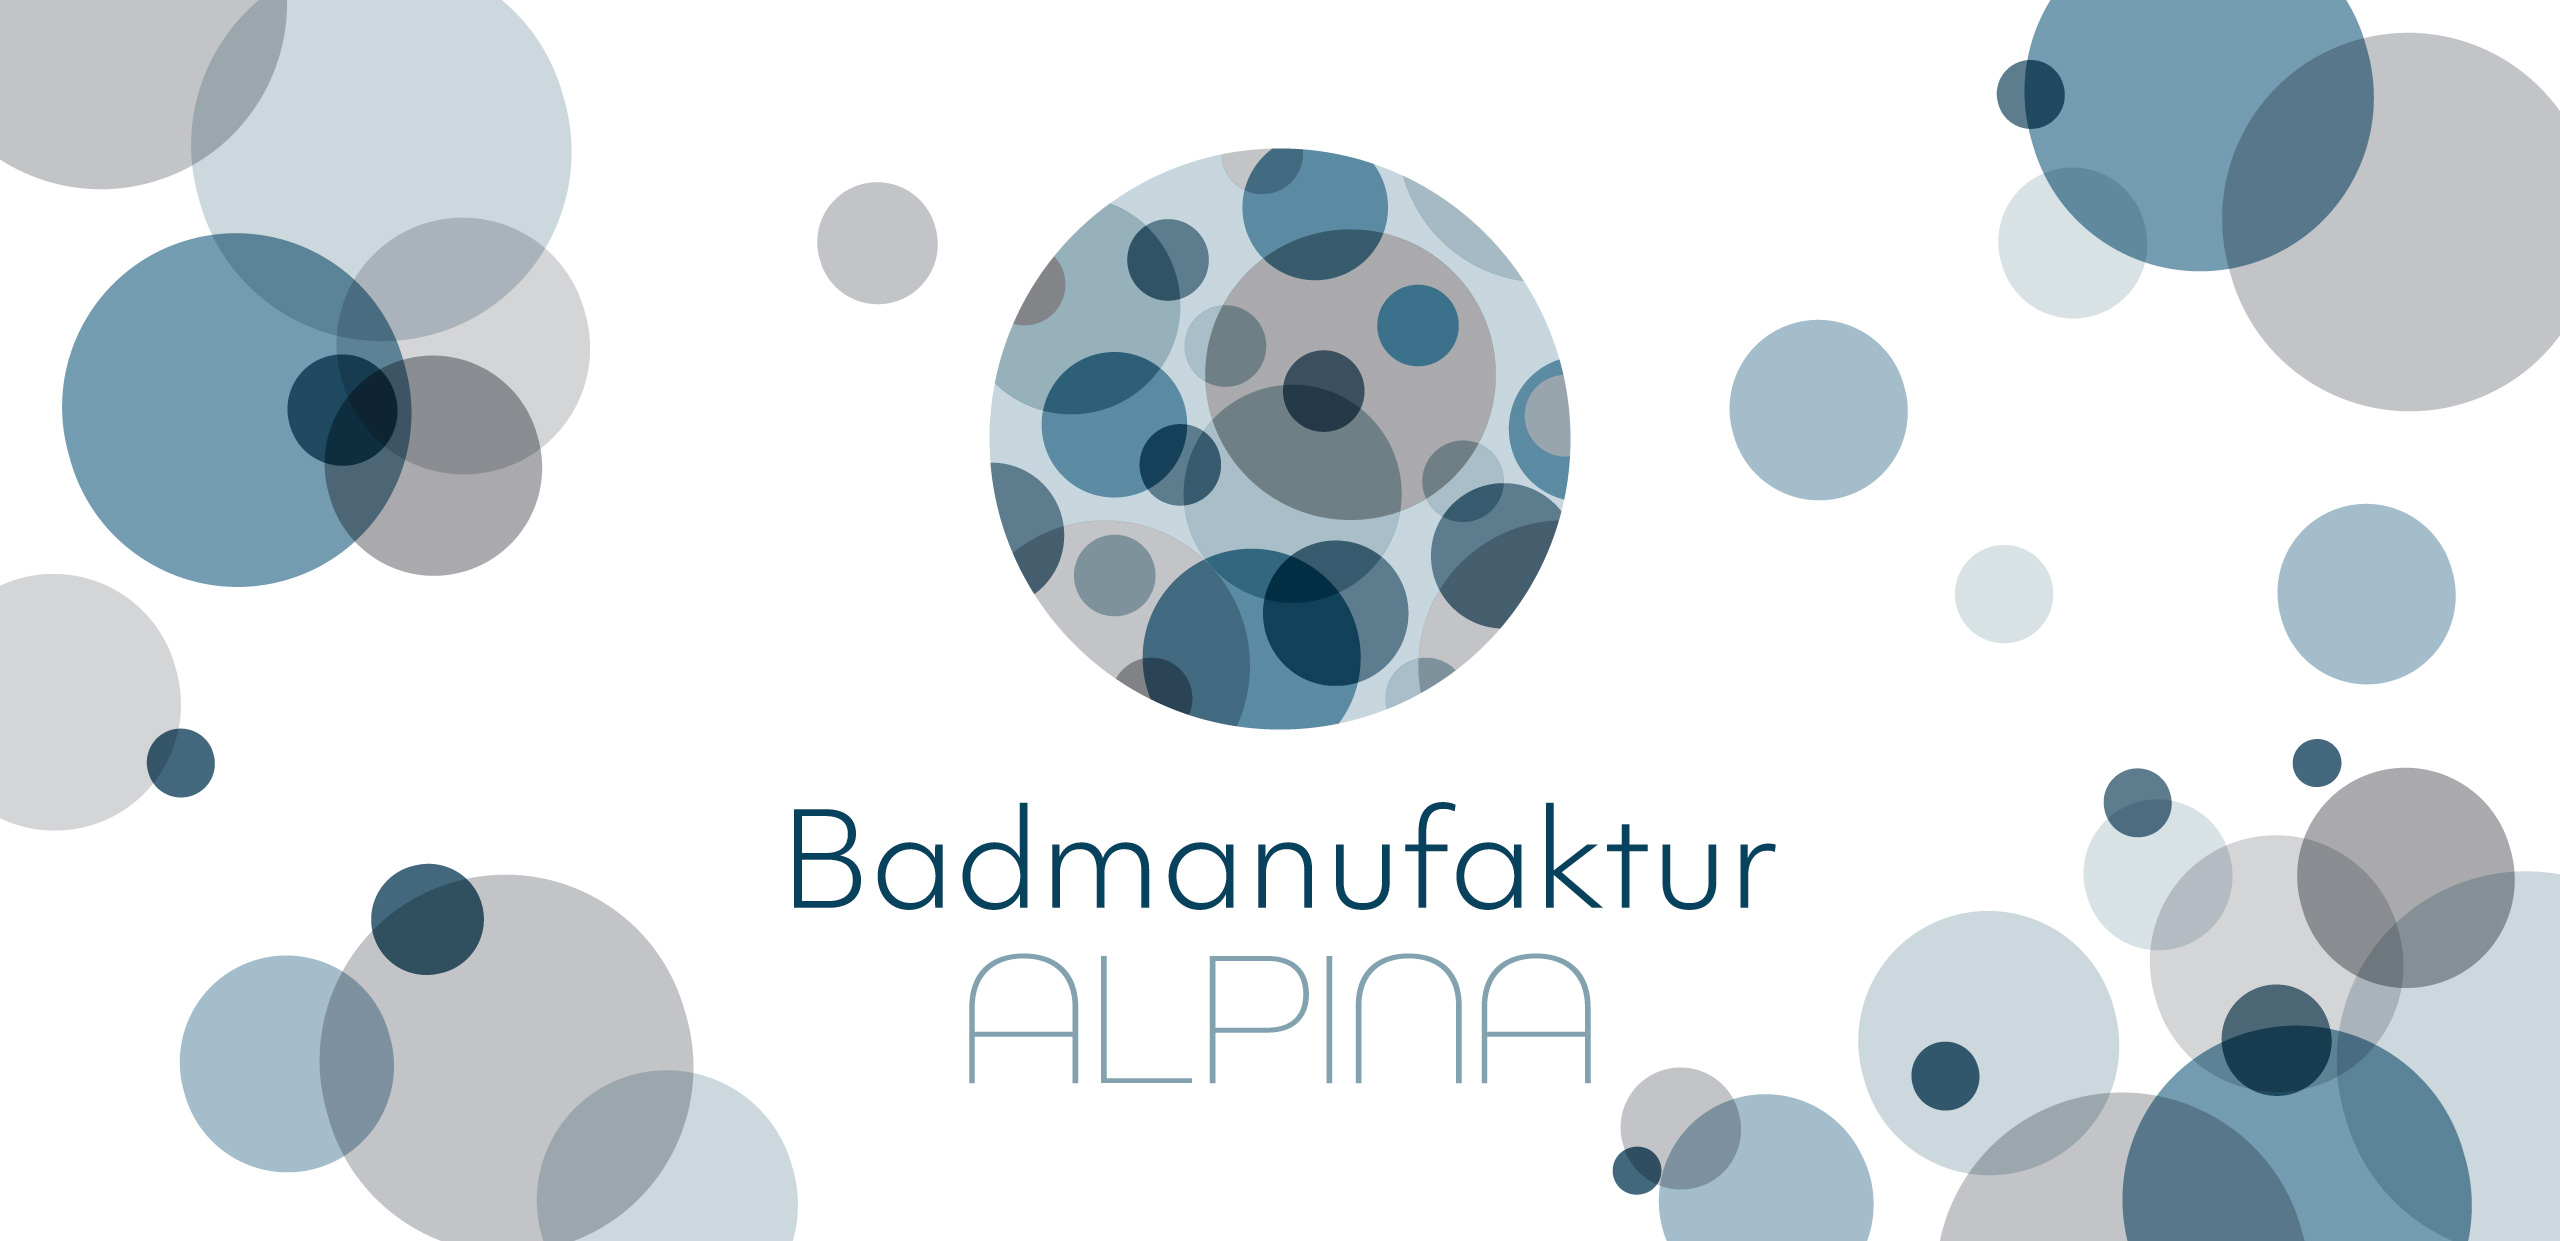 Der Header für das Projekt der Badmanufaktur Alpina zeigt das Logo verziert mit einigen sich überlagernden Kreisen angelehnt an das Logo.